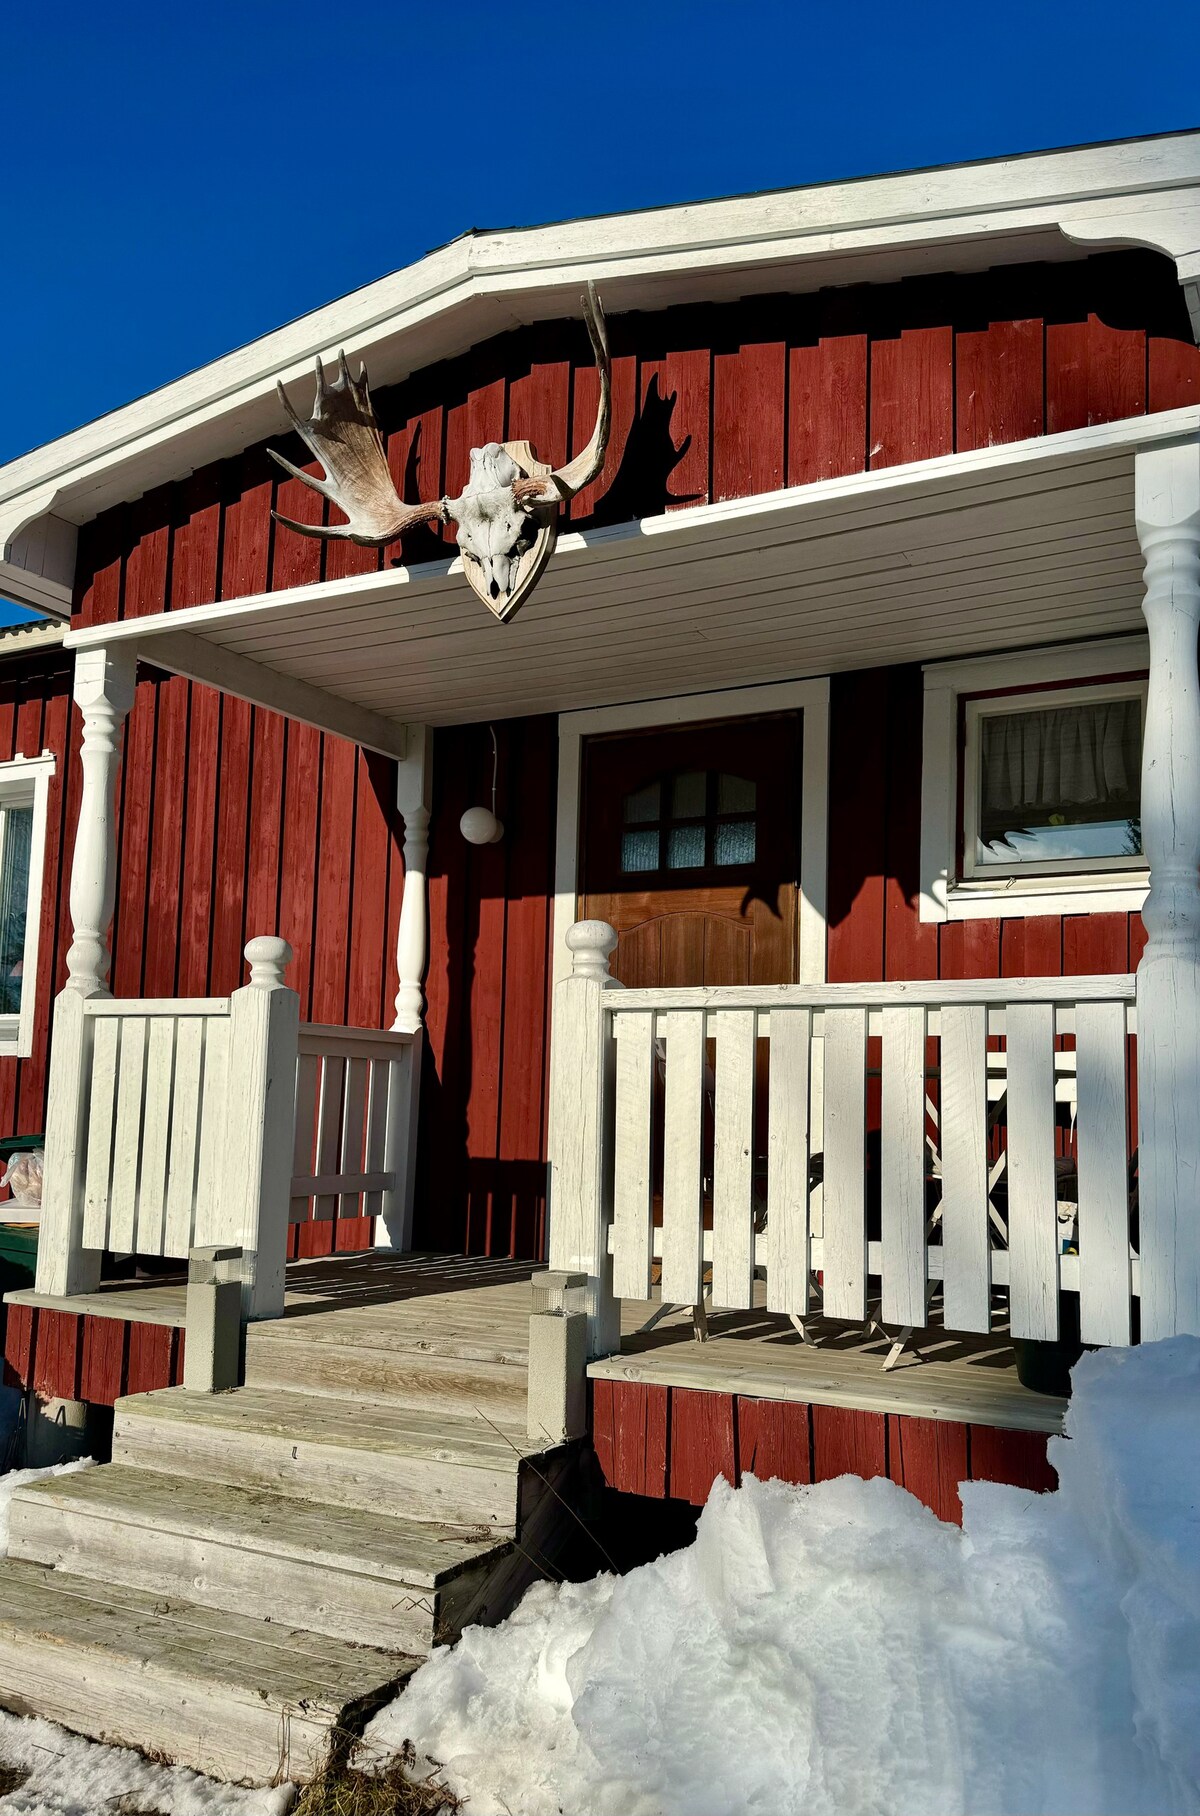 Ferienhaus in der Natur bei Arvidsjaur in Lappland